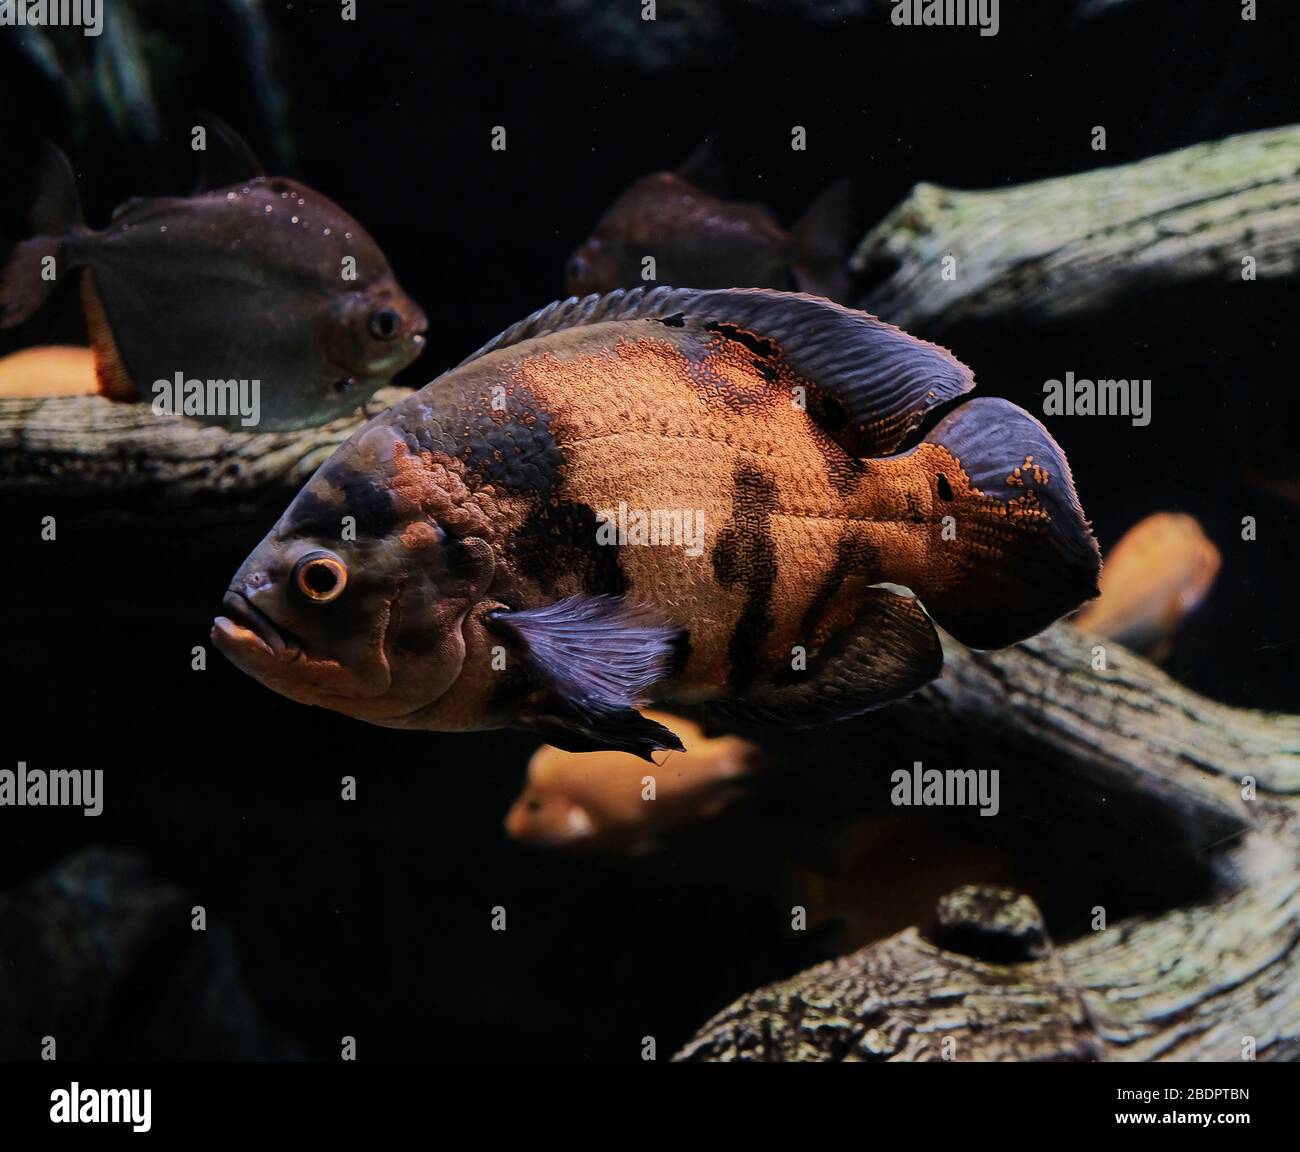 Aquarium fish Astronotus Stock Photo